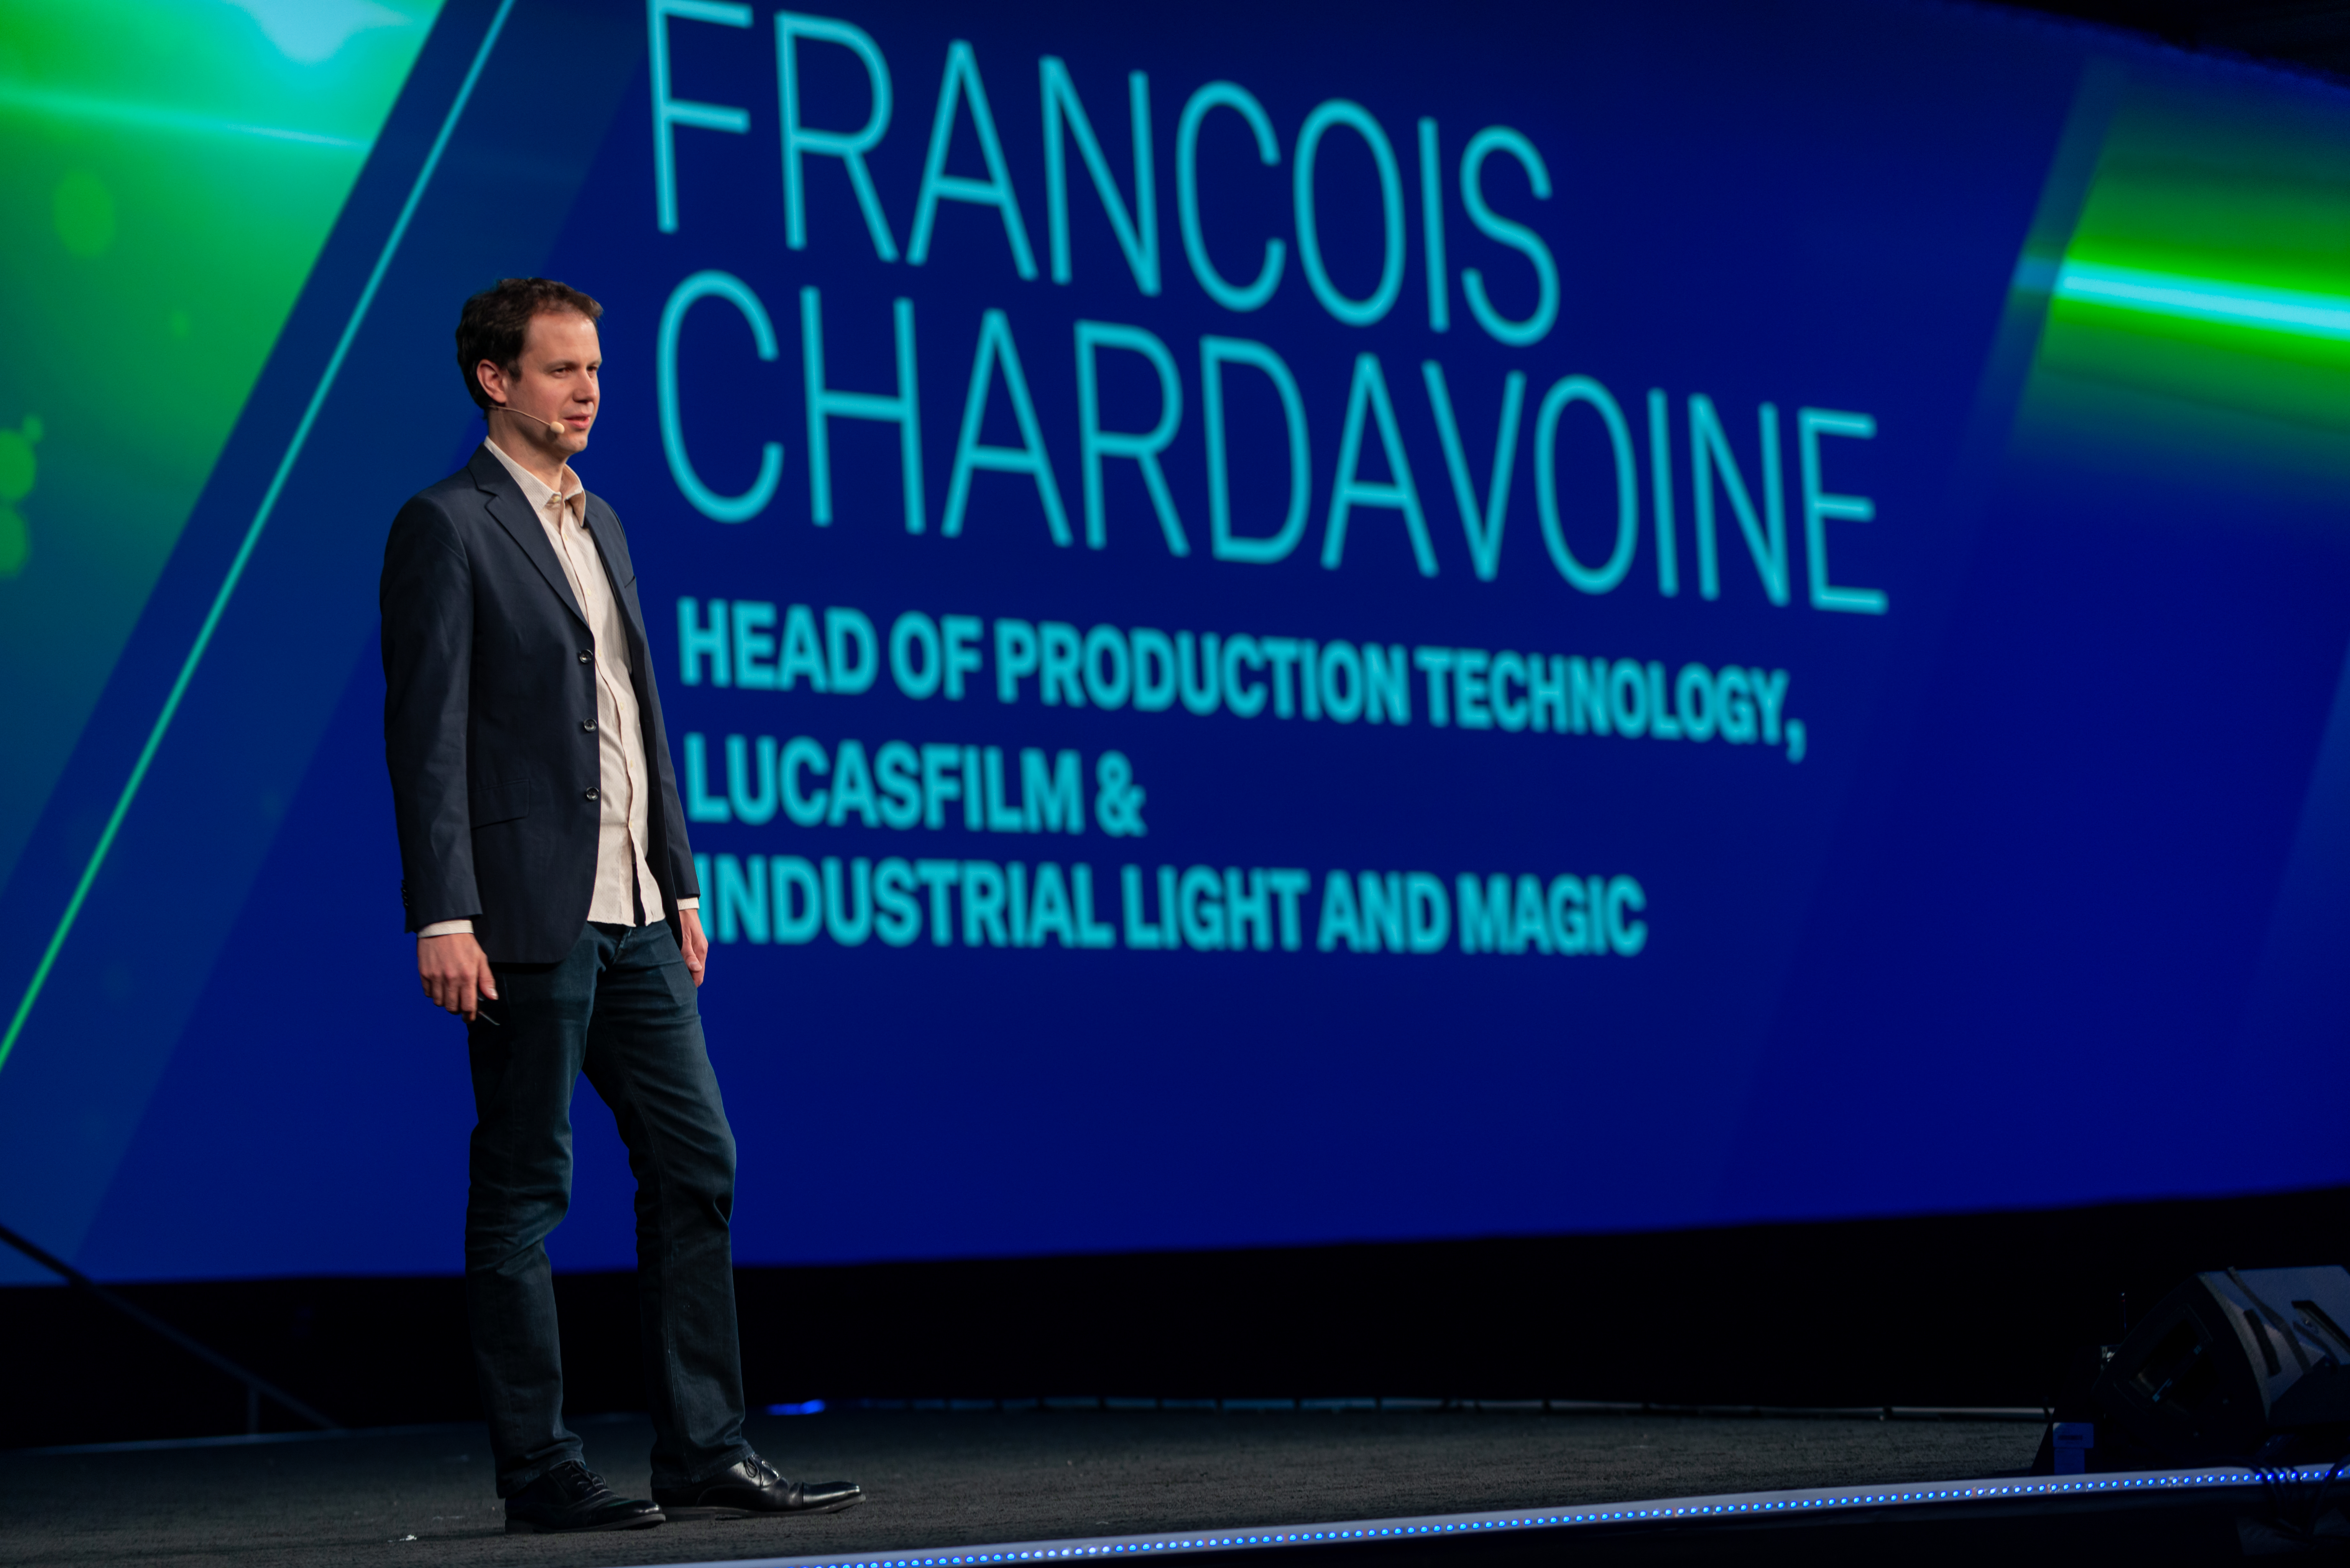           Francois Chardavoine hält eine Keynote-Präsentation auf der HxGN Live 2019 in Las Vegas